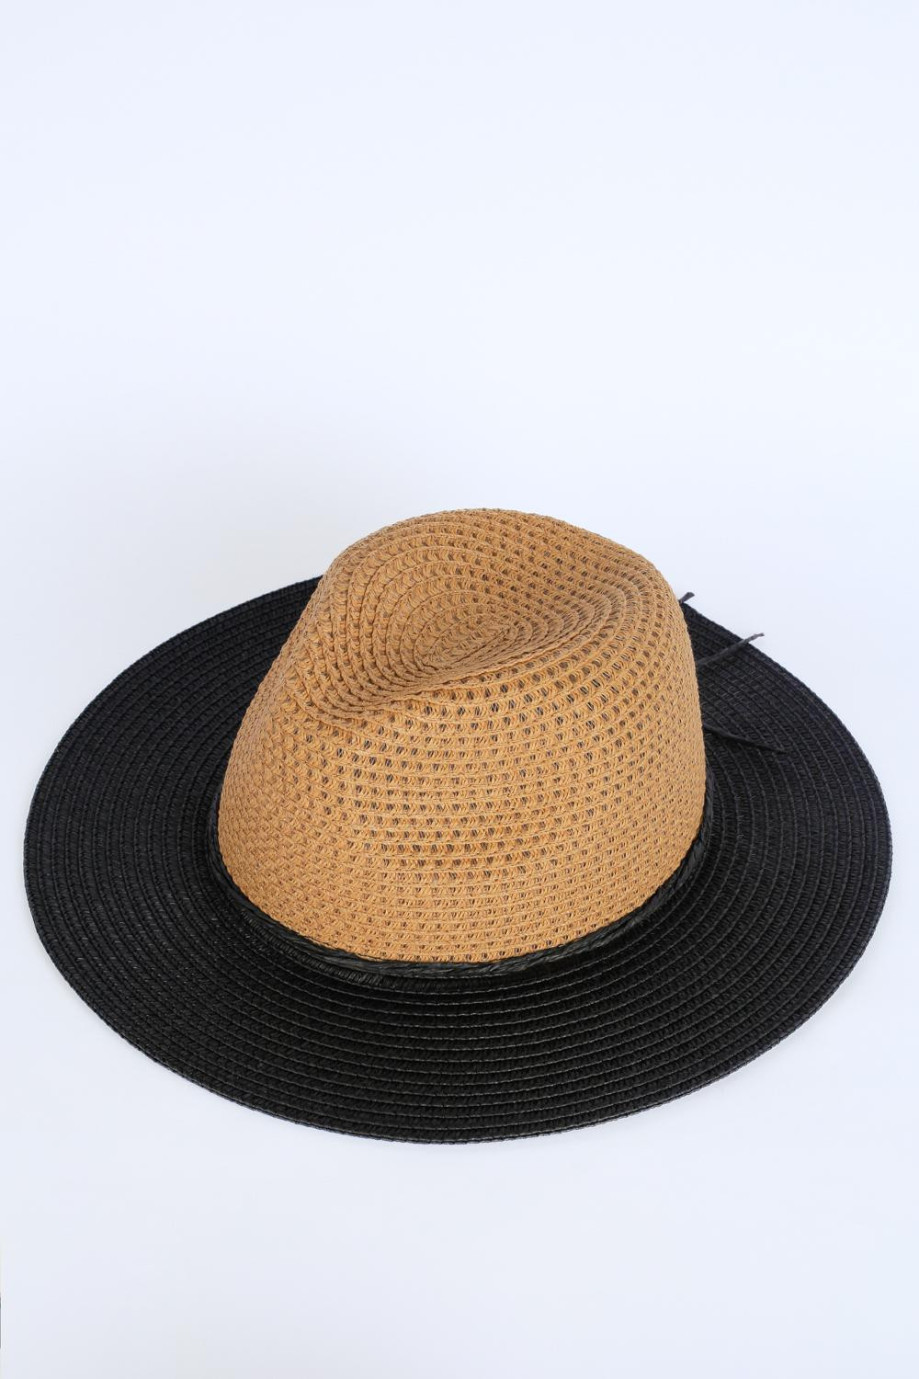 Sombrero kaky claro con ala ancha plana negra en contraste